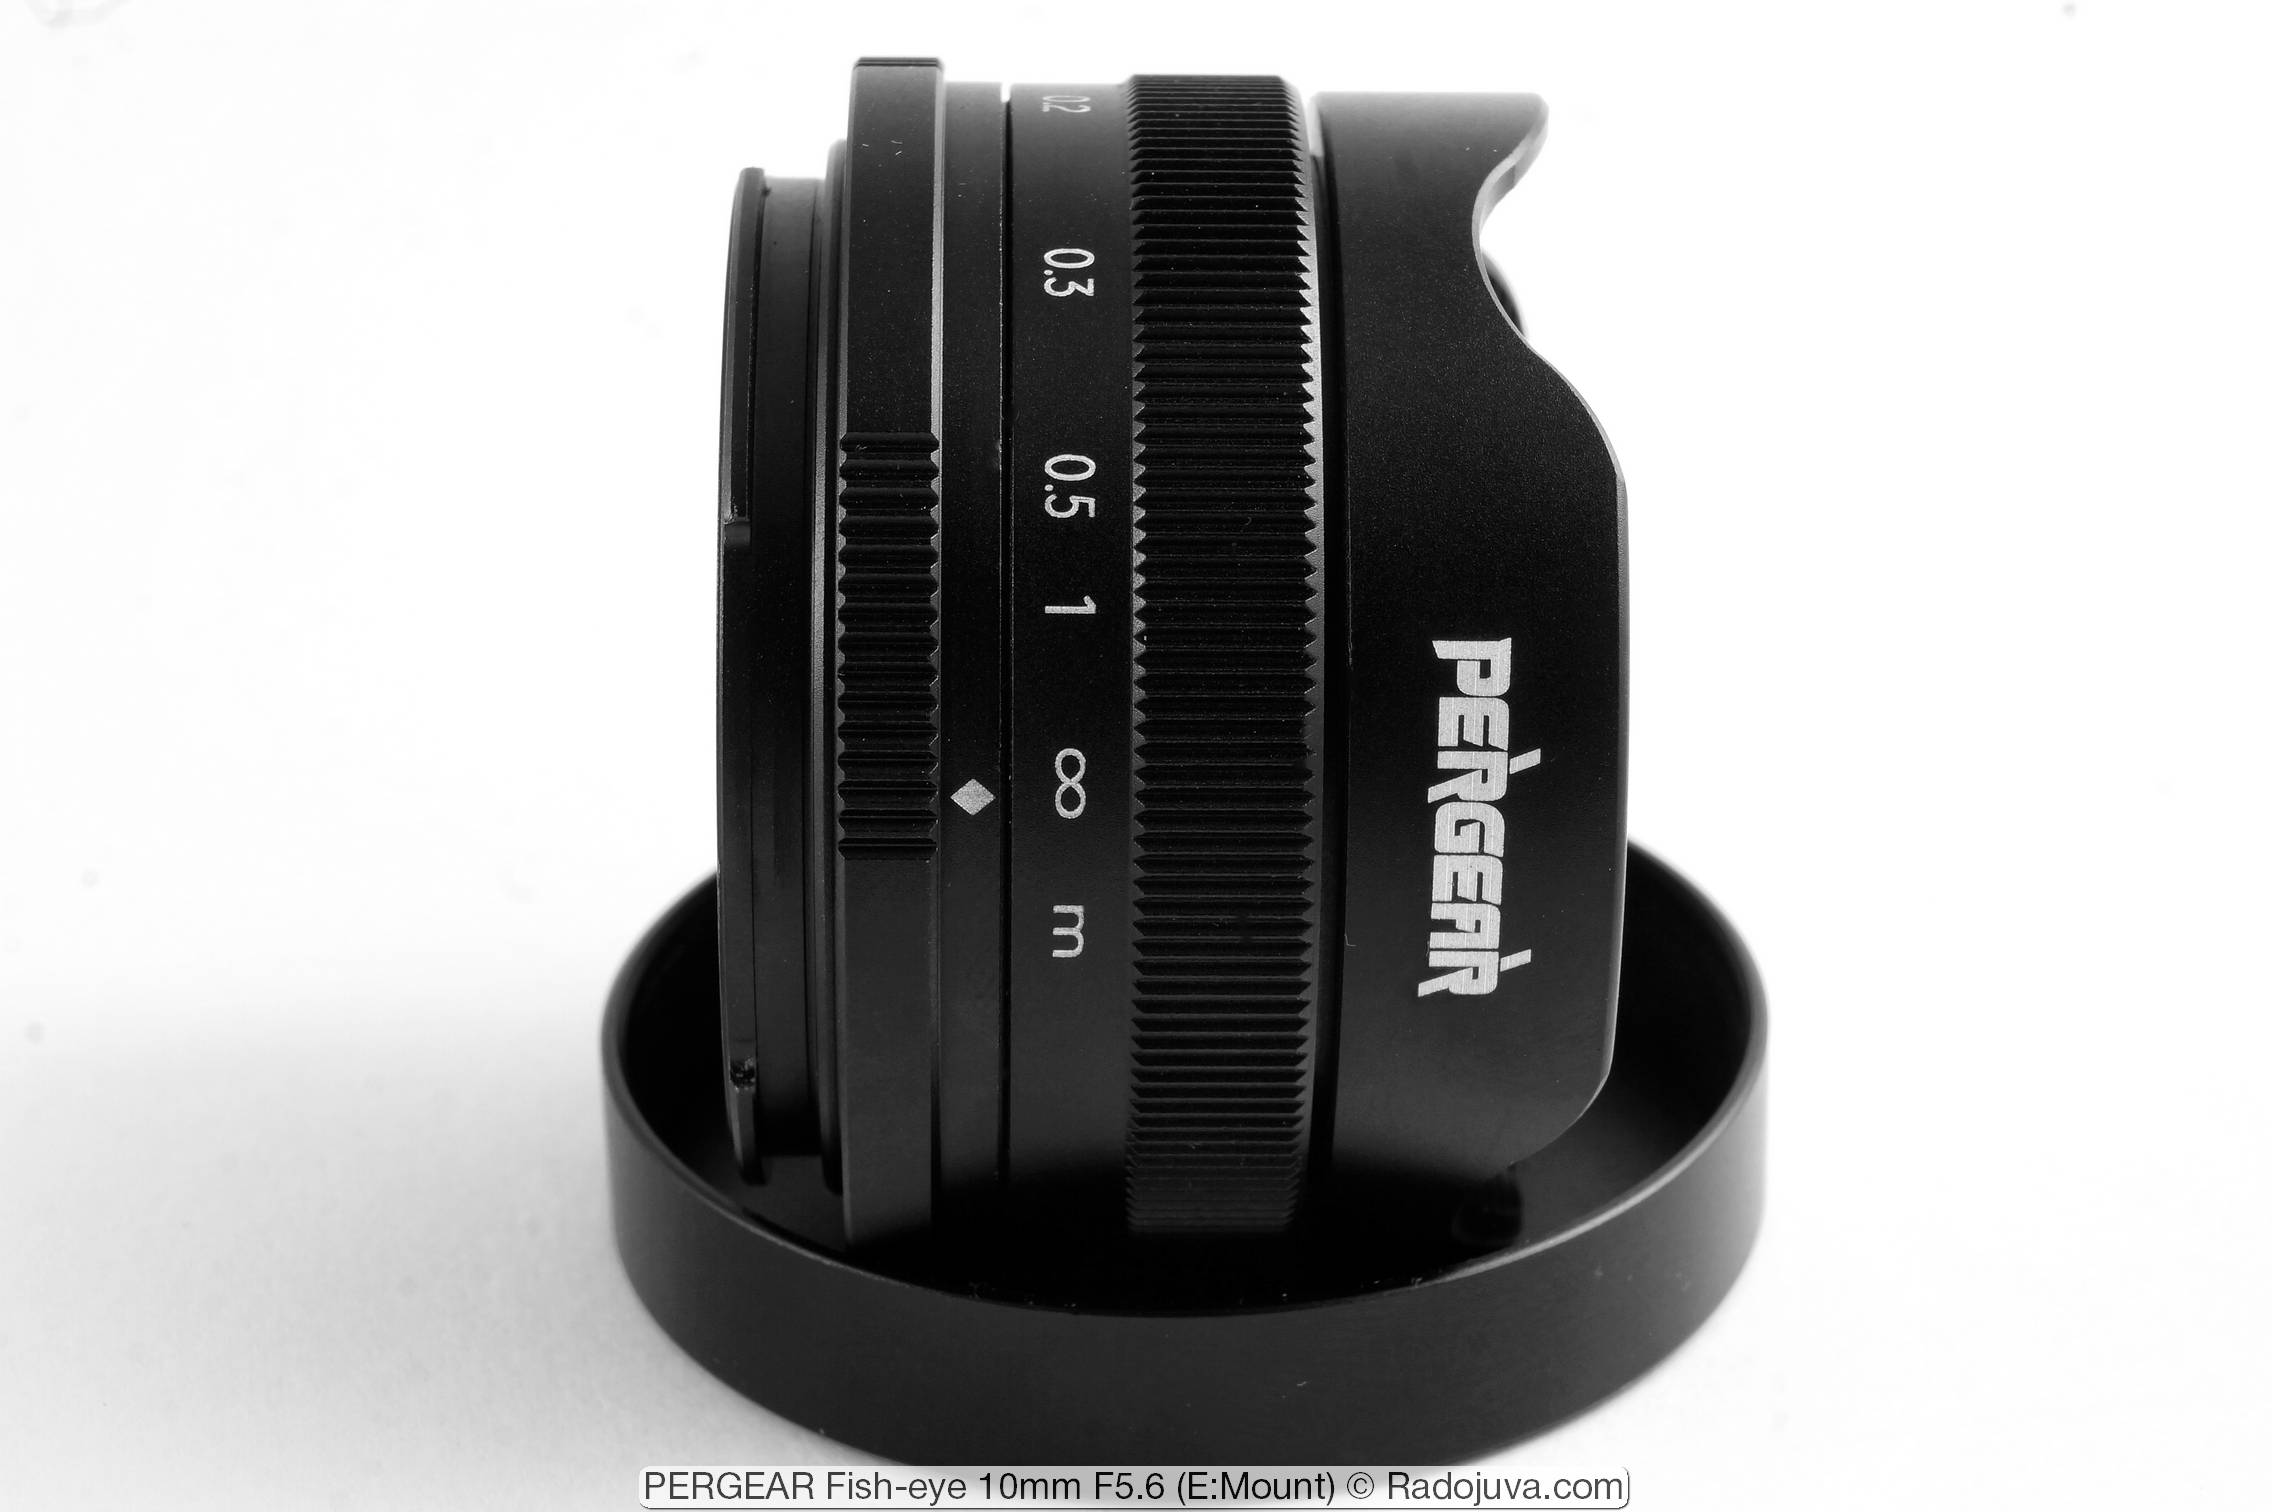 PERGEAR Fish-eye 10mm F5.6 